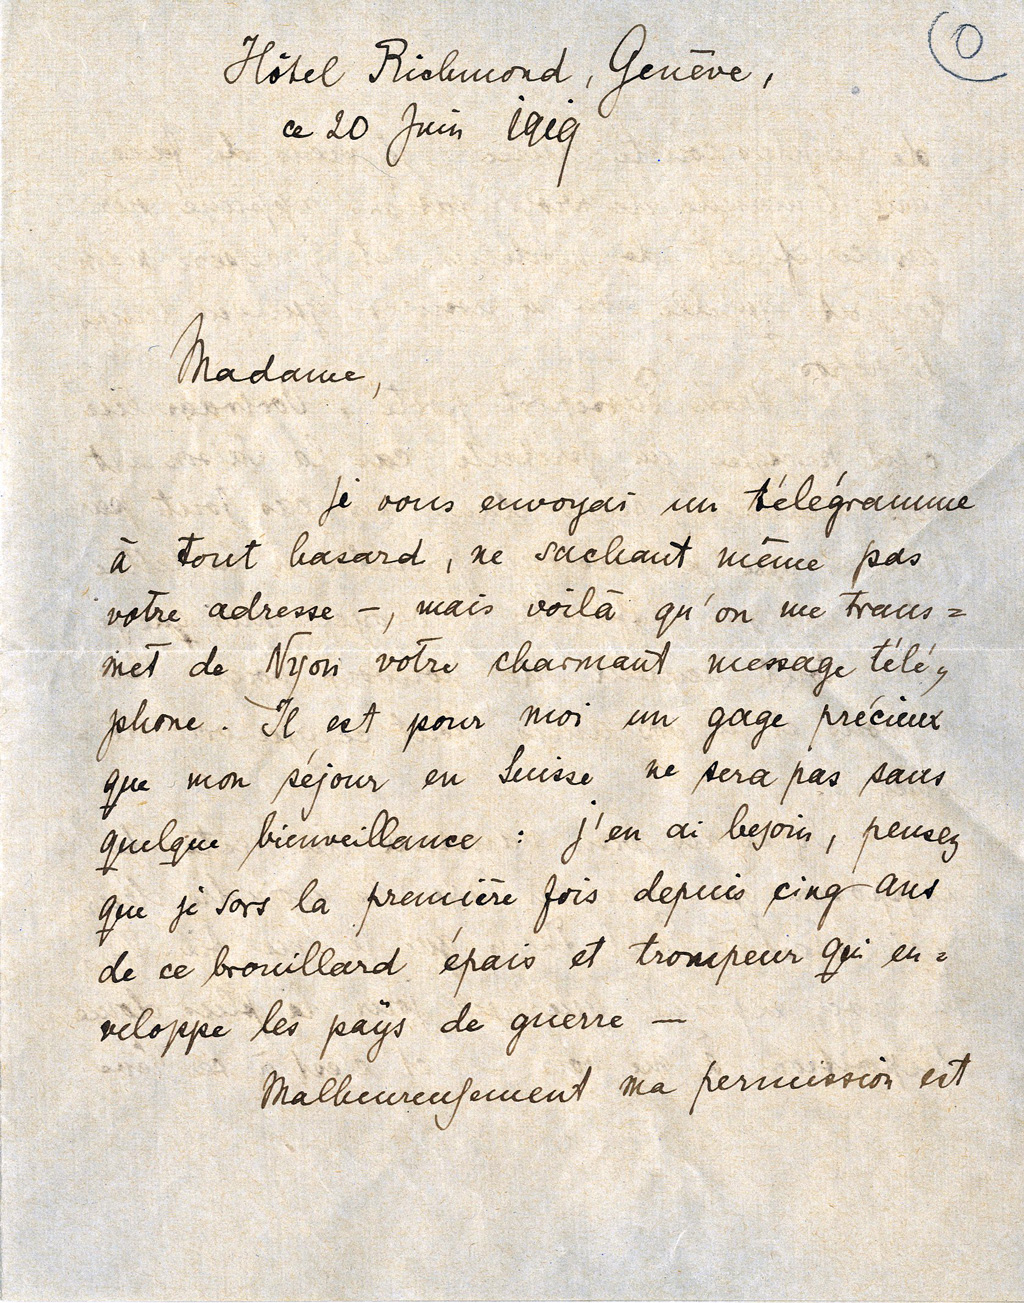 Lettre de Rilke à Yvonne de Wattenwyl, 20 juin 1919